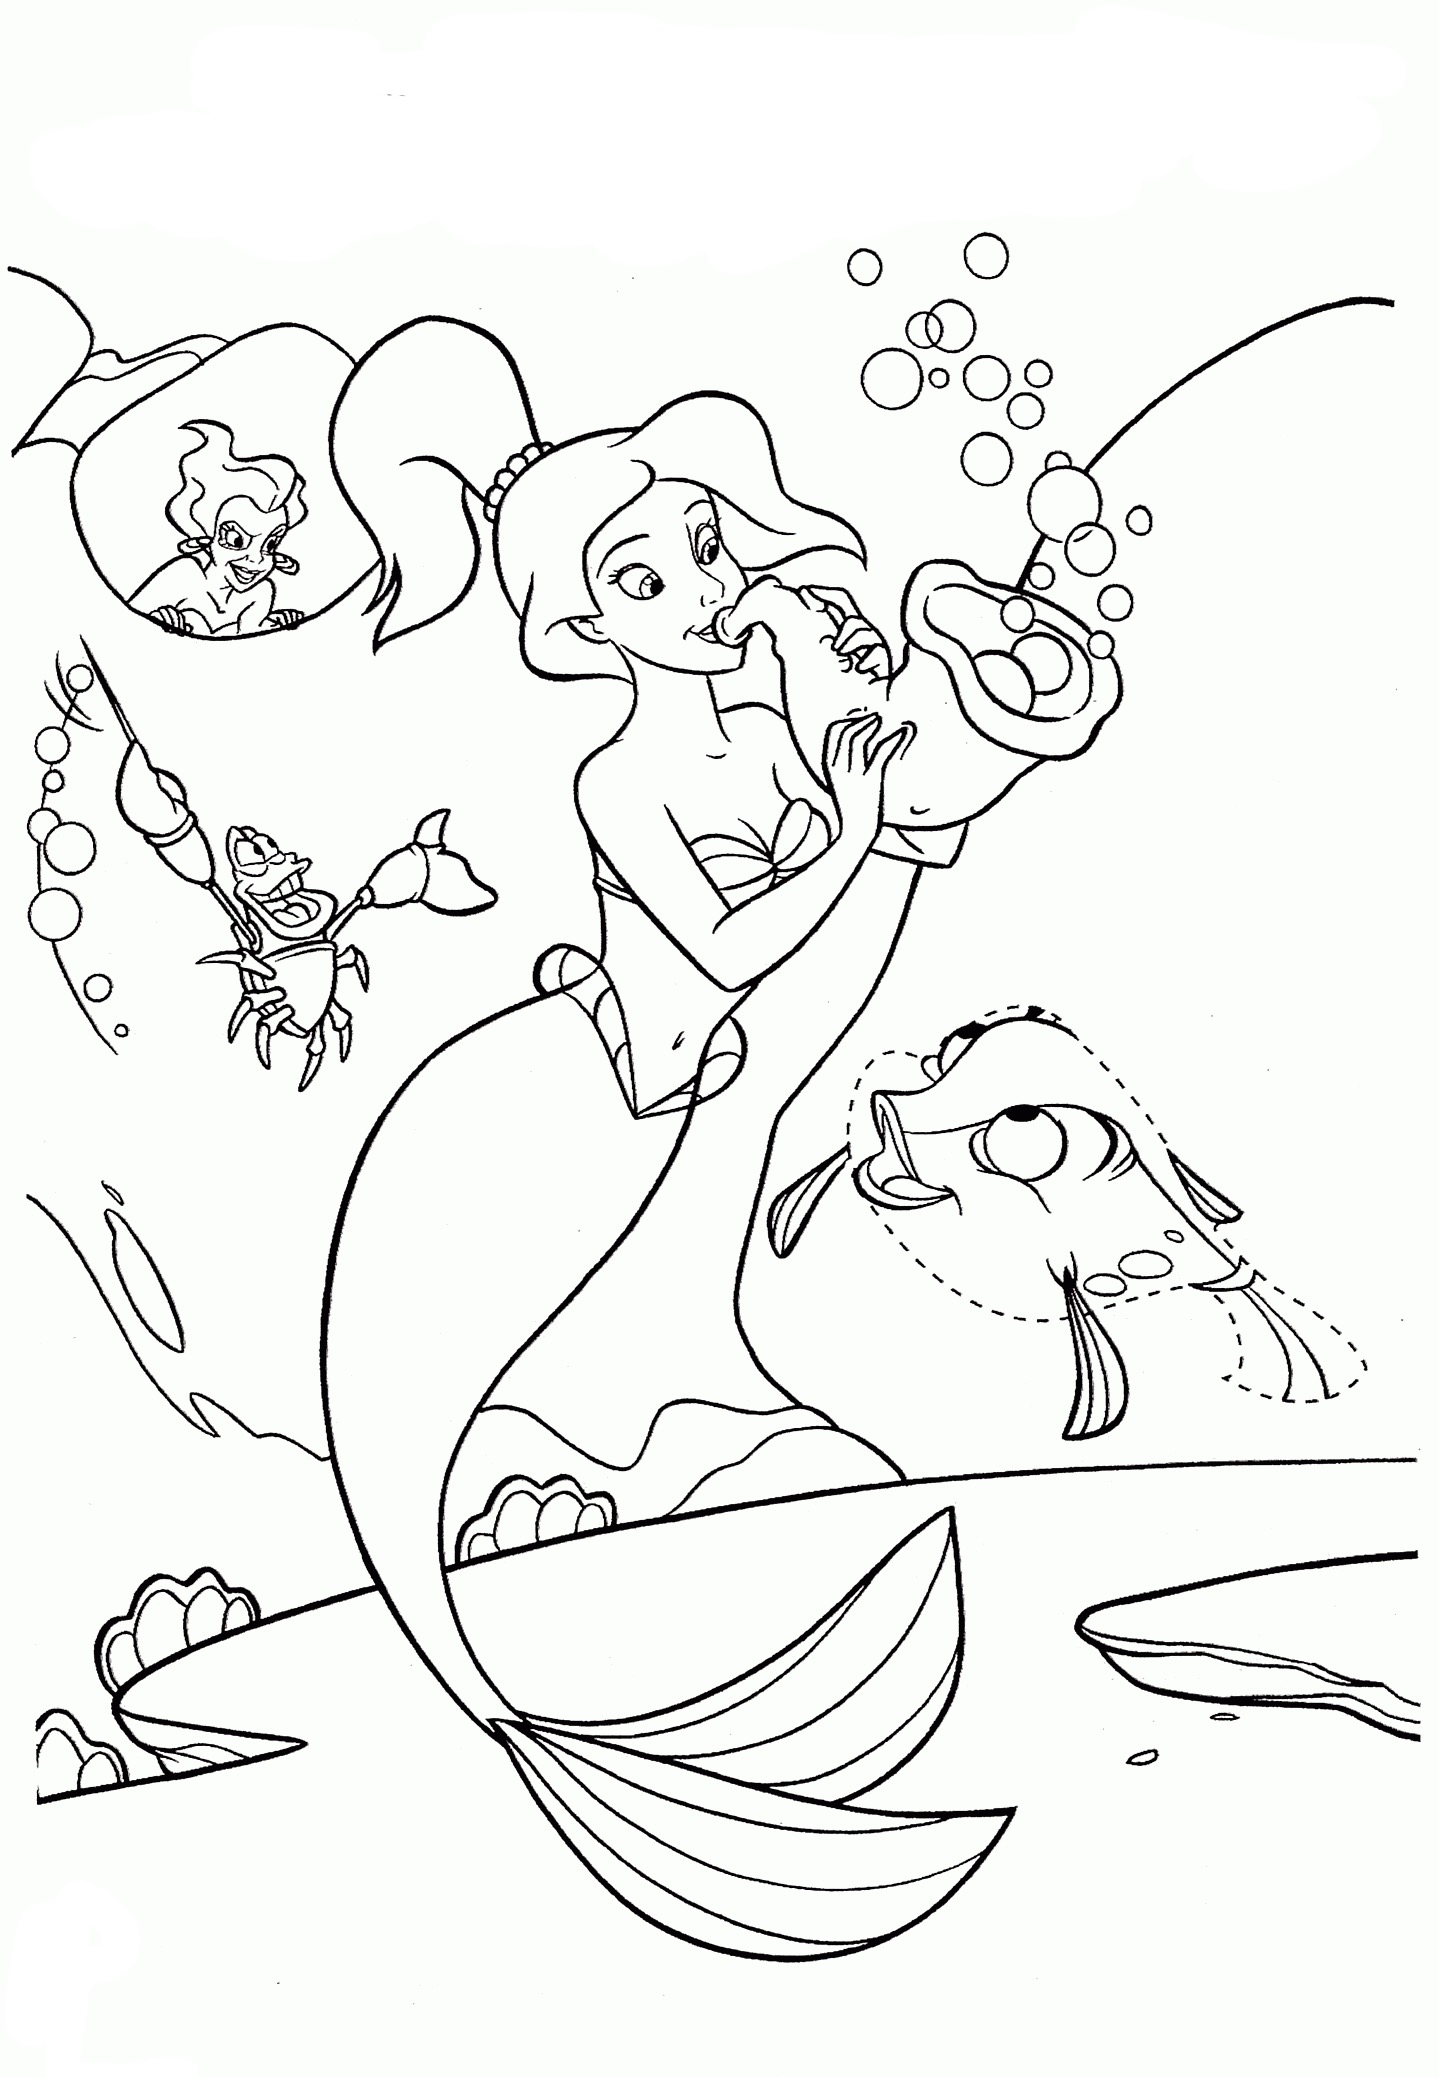 Kolorowanka syrenka Marina przygląda się grającej na muszli syrenie obok ryb i krabów